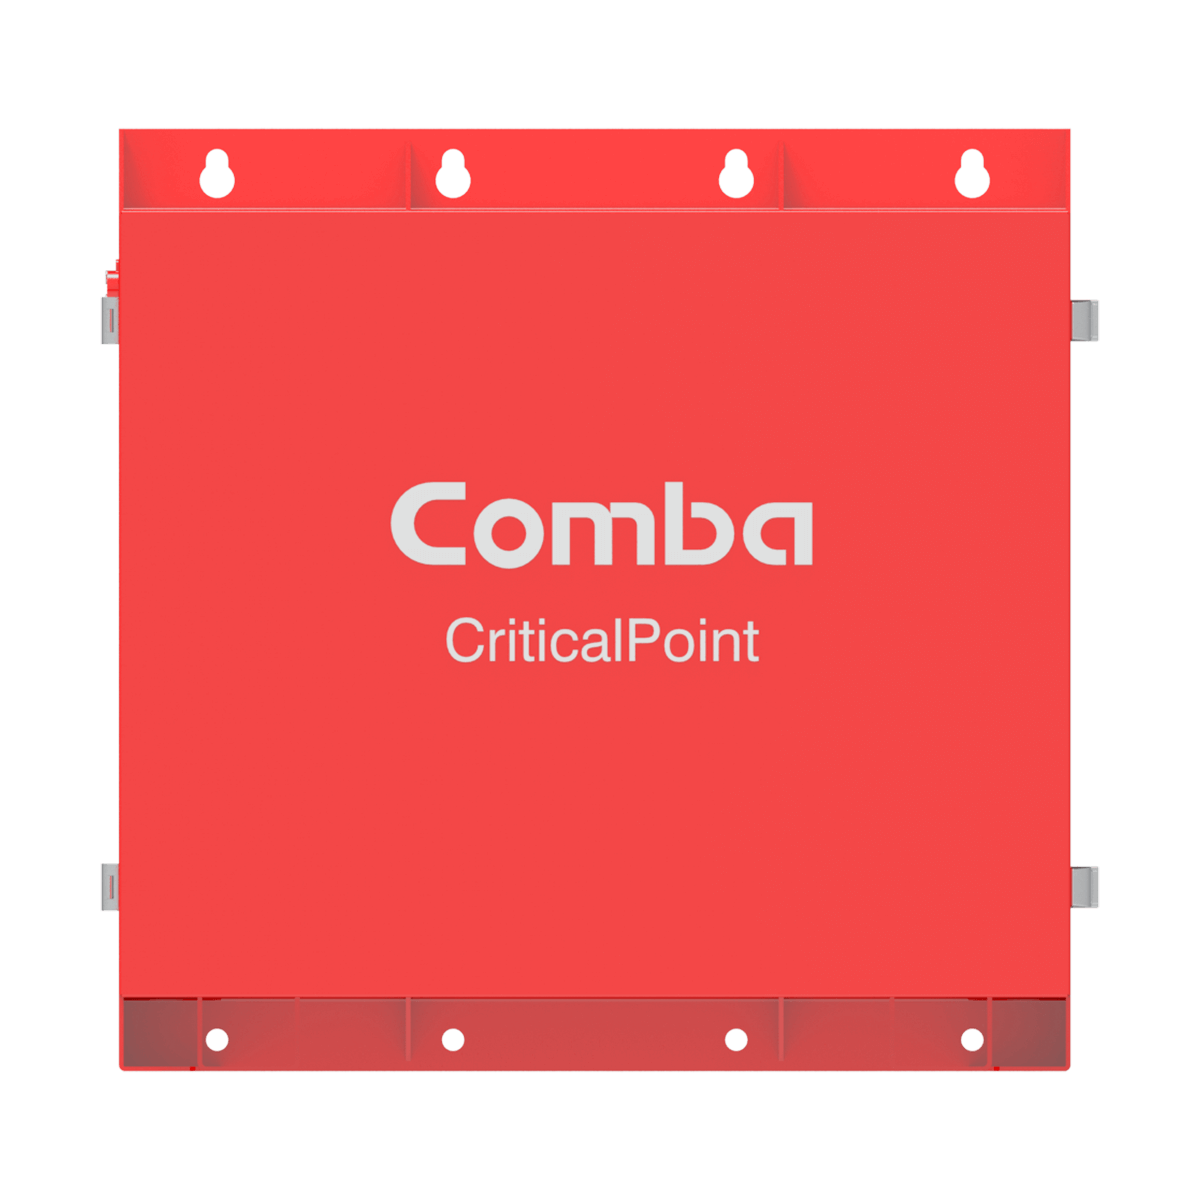 Original Image: Comba – 100-240VAC Input / -48VDC Output, 30AH LFP battery, UL 2524 Standard Certified, HCAI OSP listed